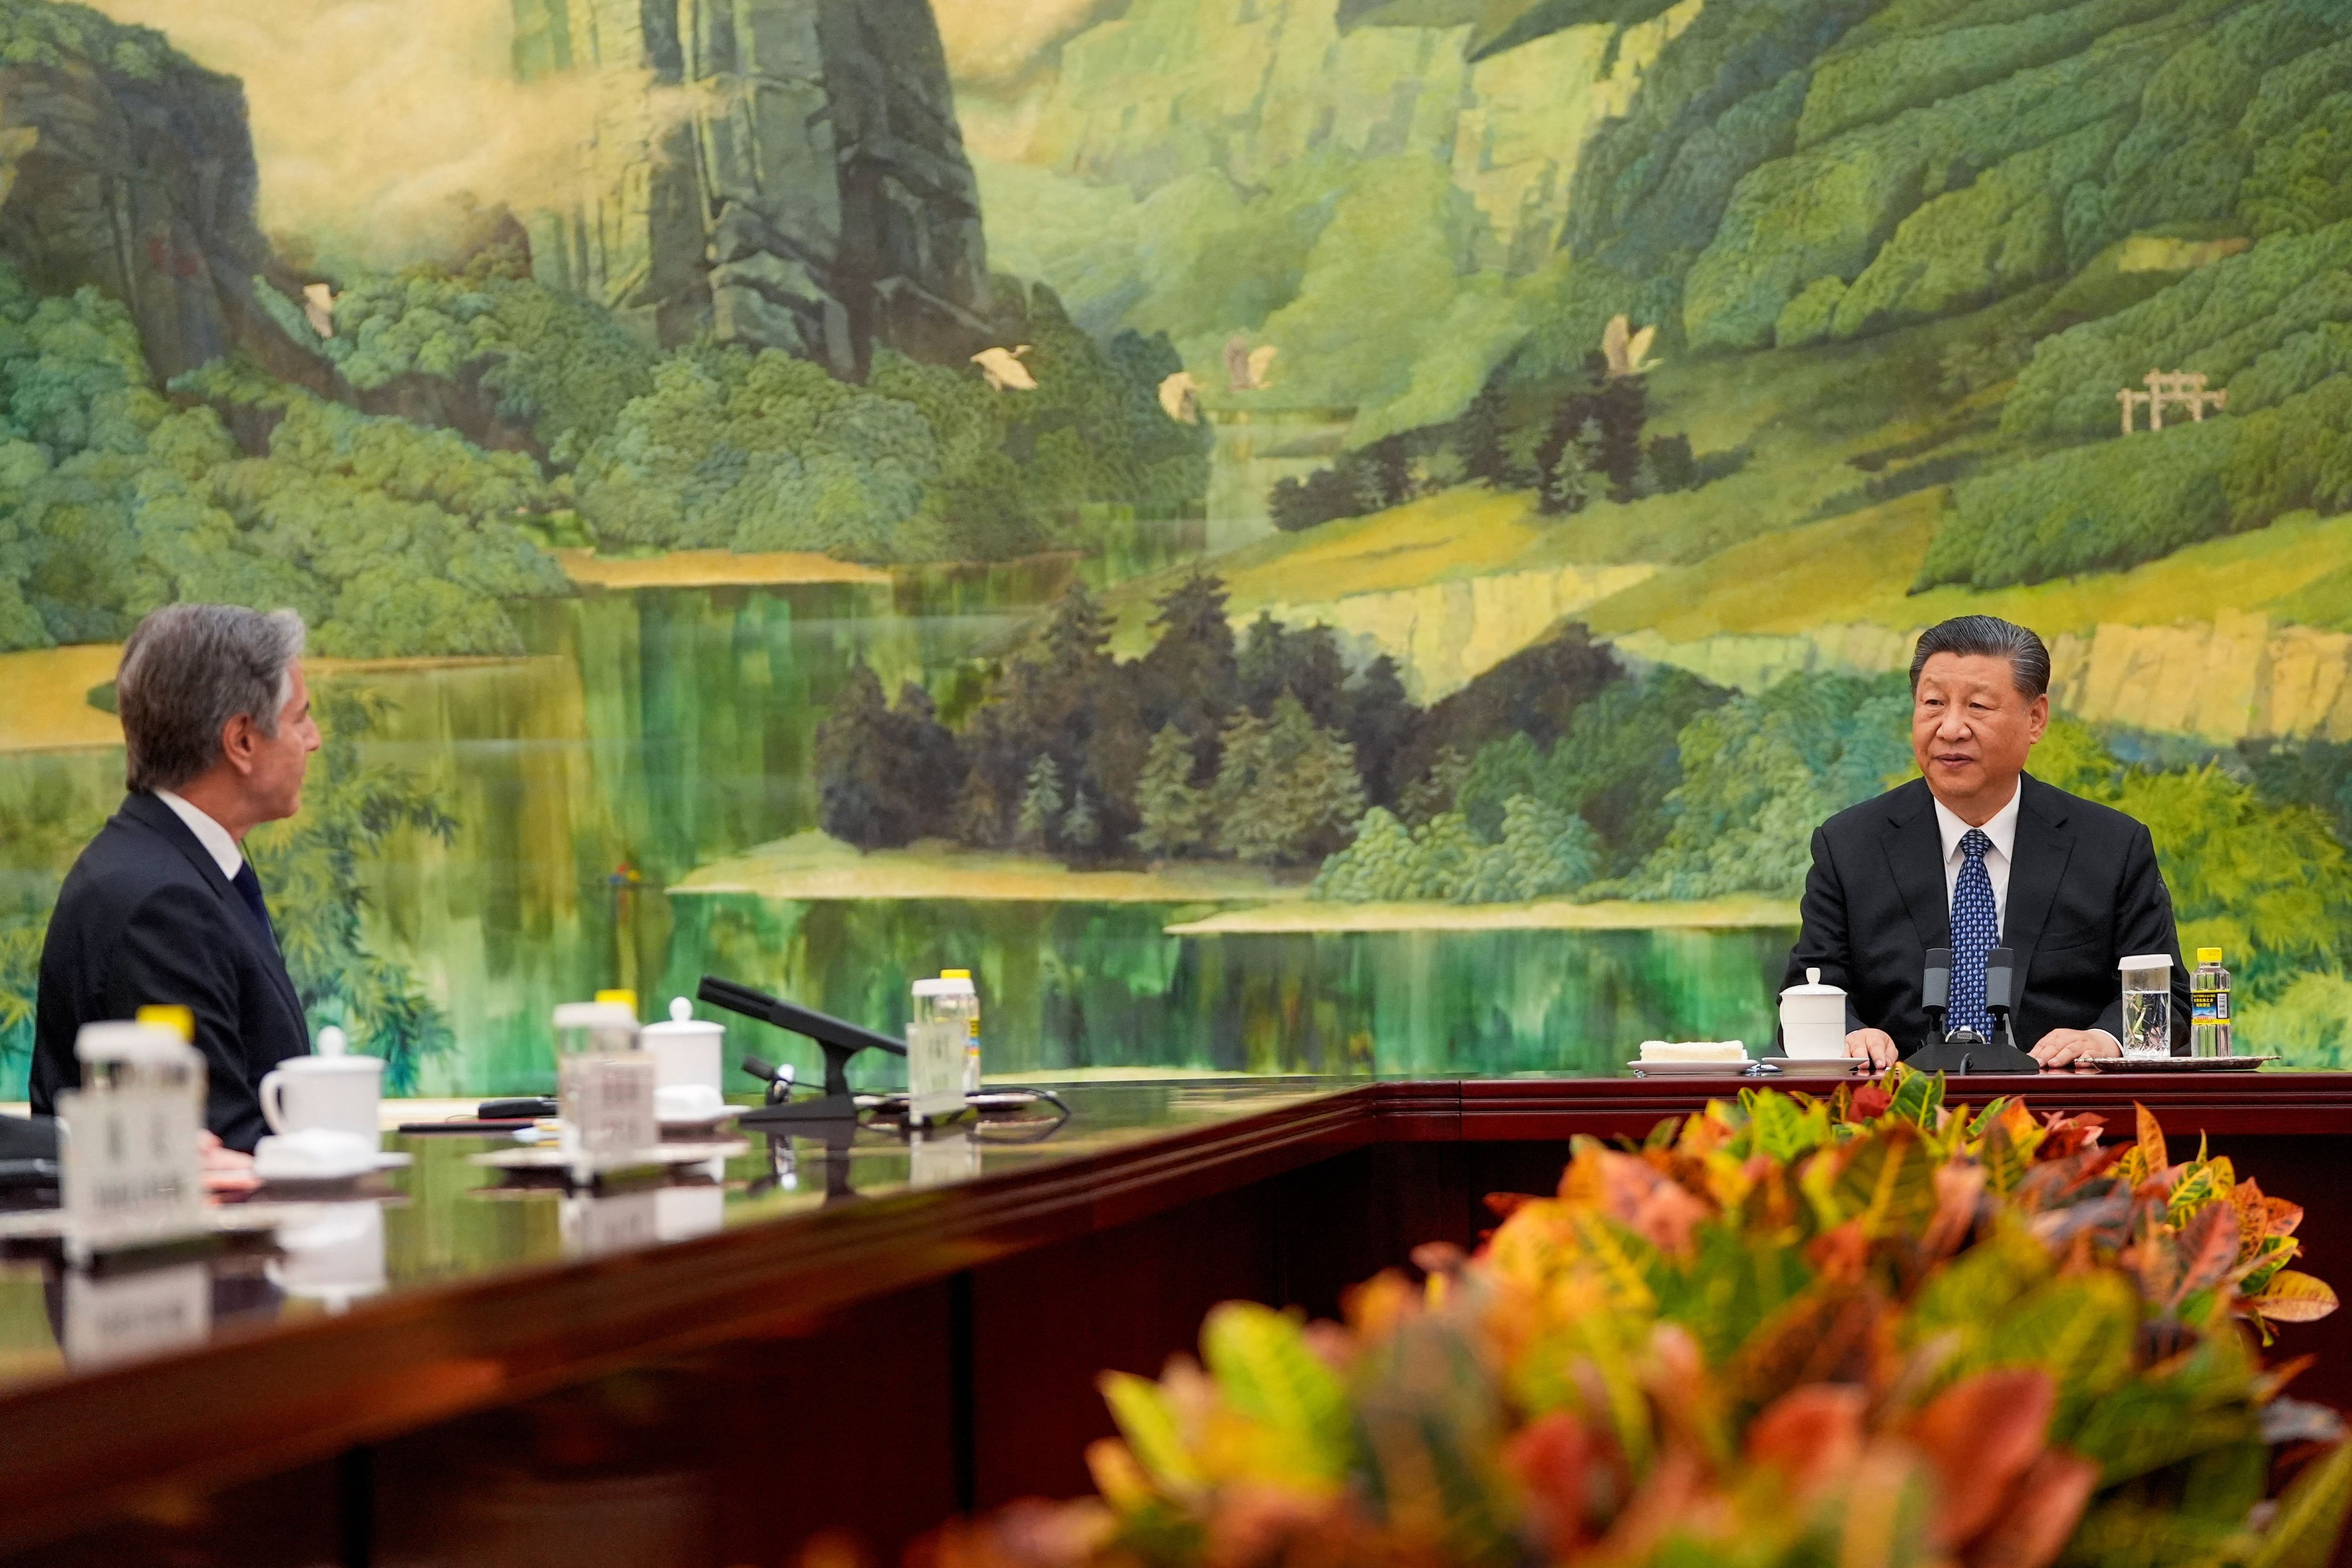 La reunión entre Antony Blinken y Xi Jinping (Mark Schiefelbein/Pool via REUTERS)